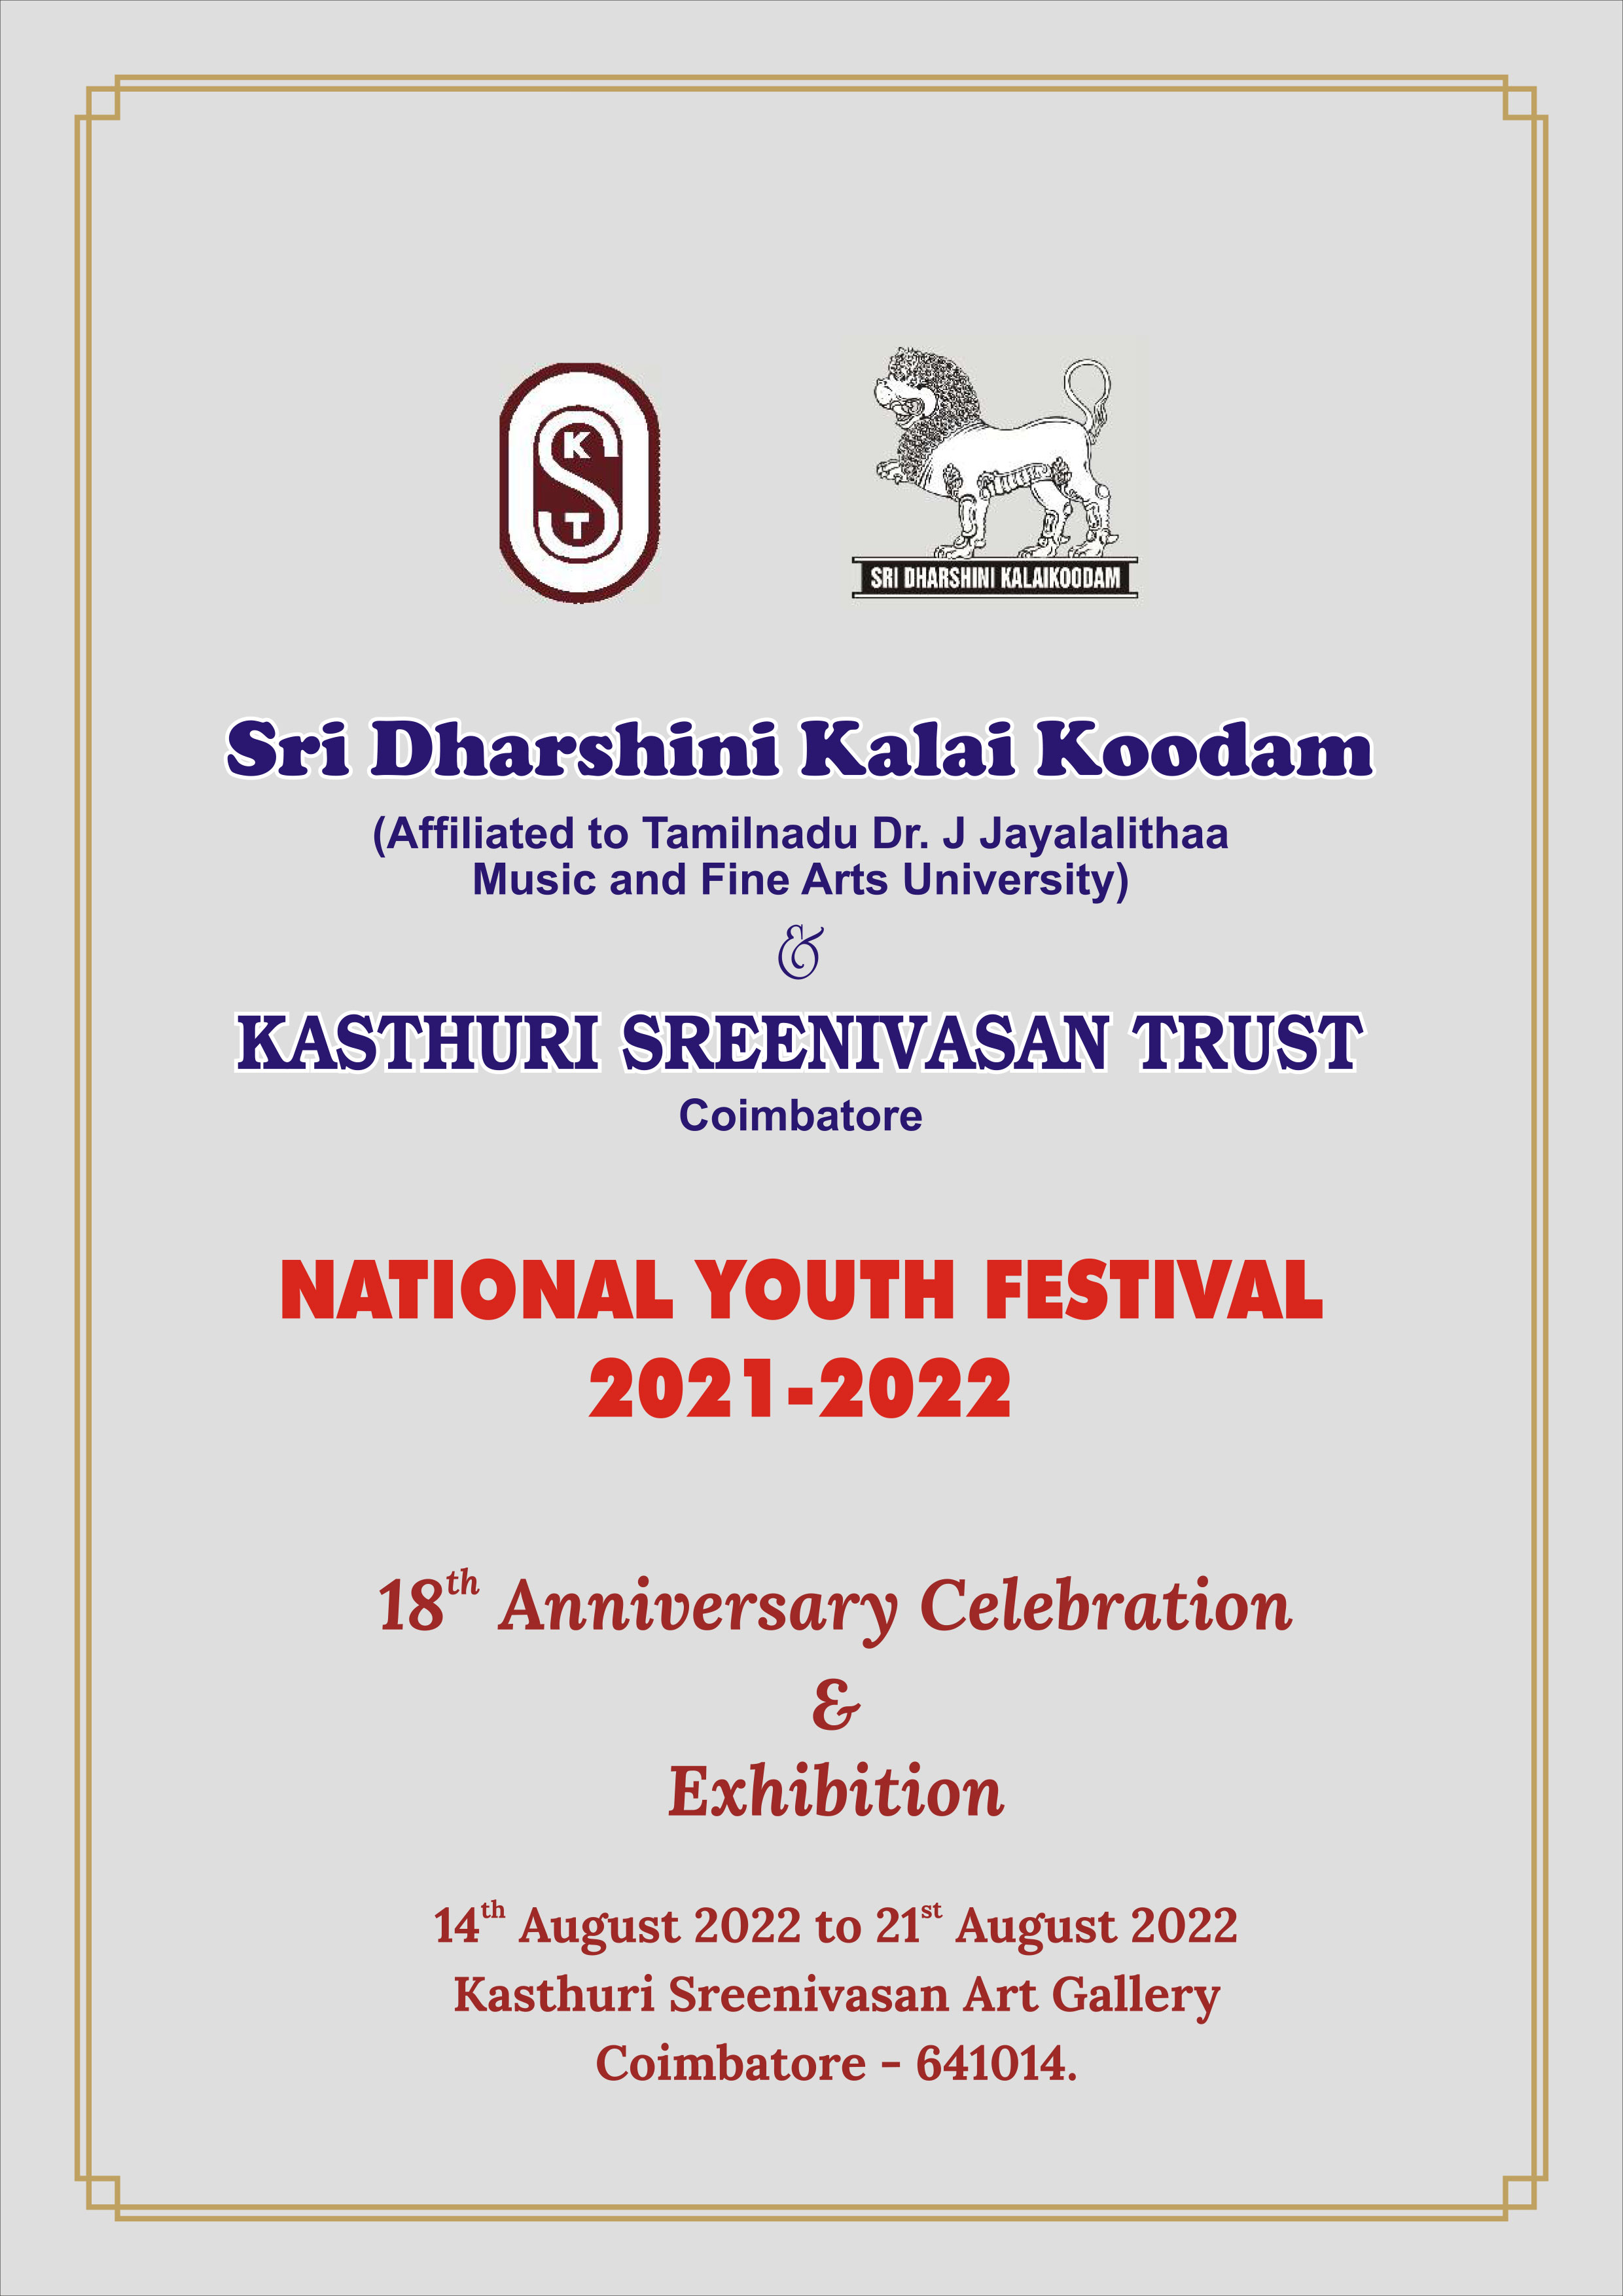 208th paint exhibition - Kasthuri sreenivasan trust